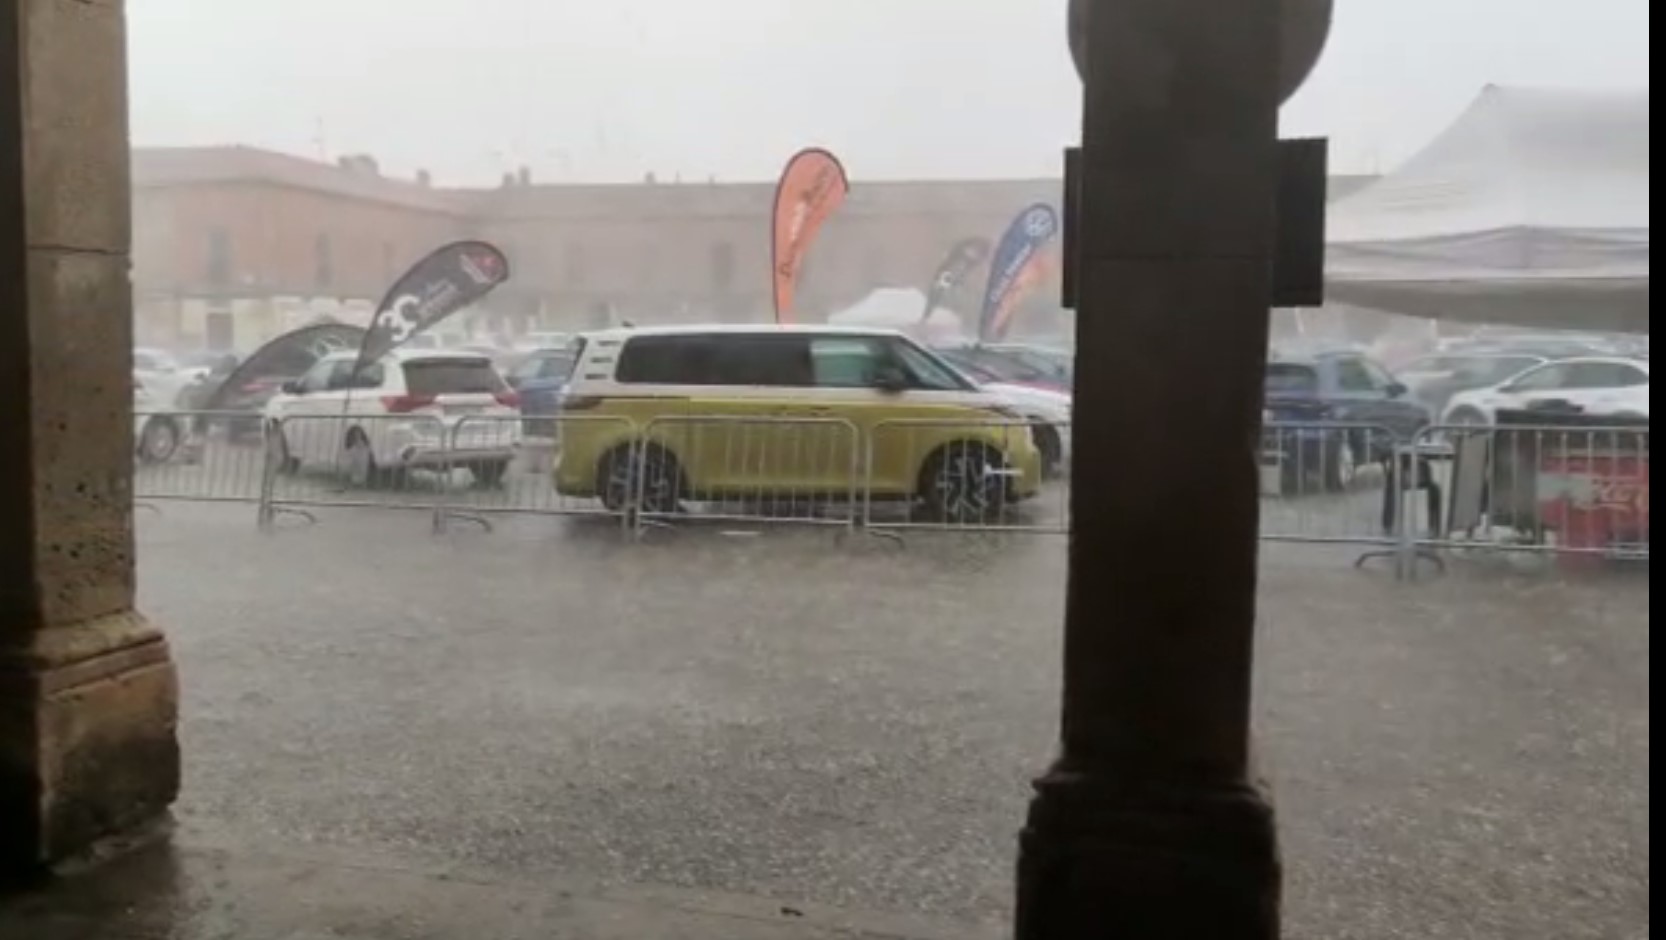 La feria de la automoción salió pasada por agua al paso de la tormenta que ha cruzado la provincia de Burgos de este a oeste.